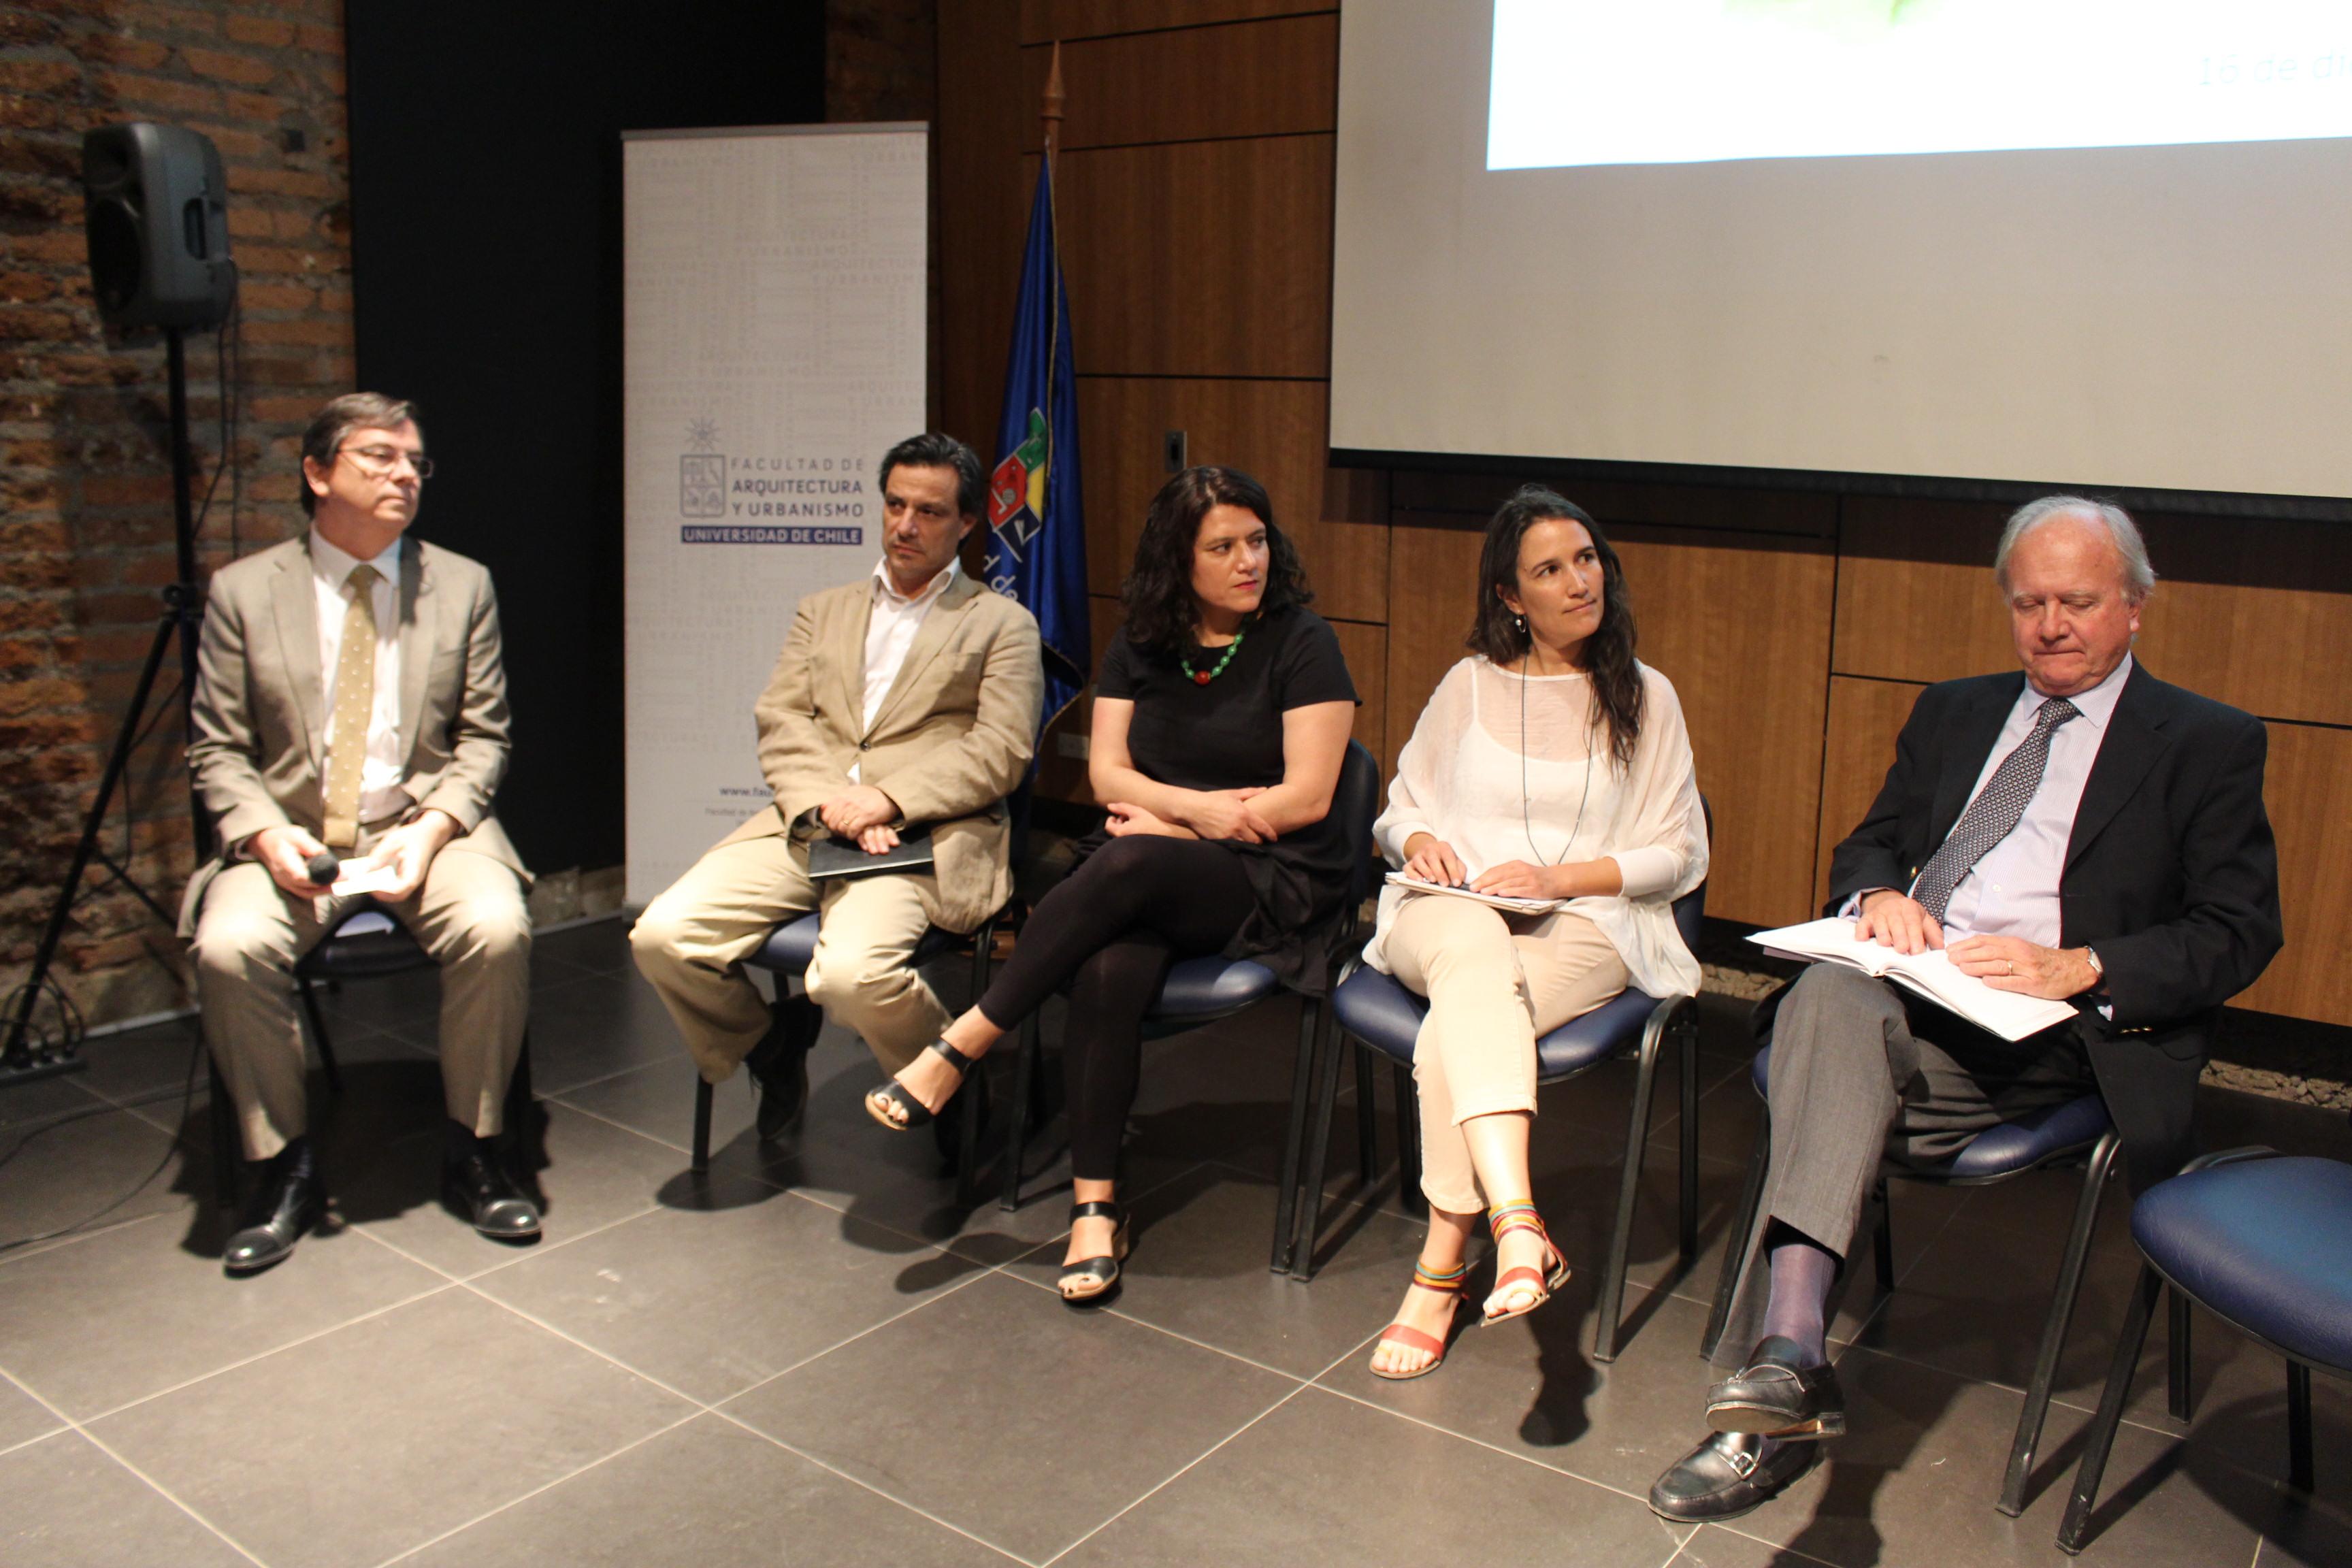 El segundo panel lo conformaron Luis Eduardo Bresciani, Presidente del CNDU, Paola Jirón, académica FAU y Catalina Justiniano, Directora Ejecutiva de "Junto al Barrio".